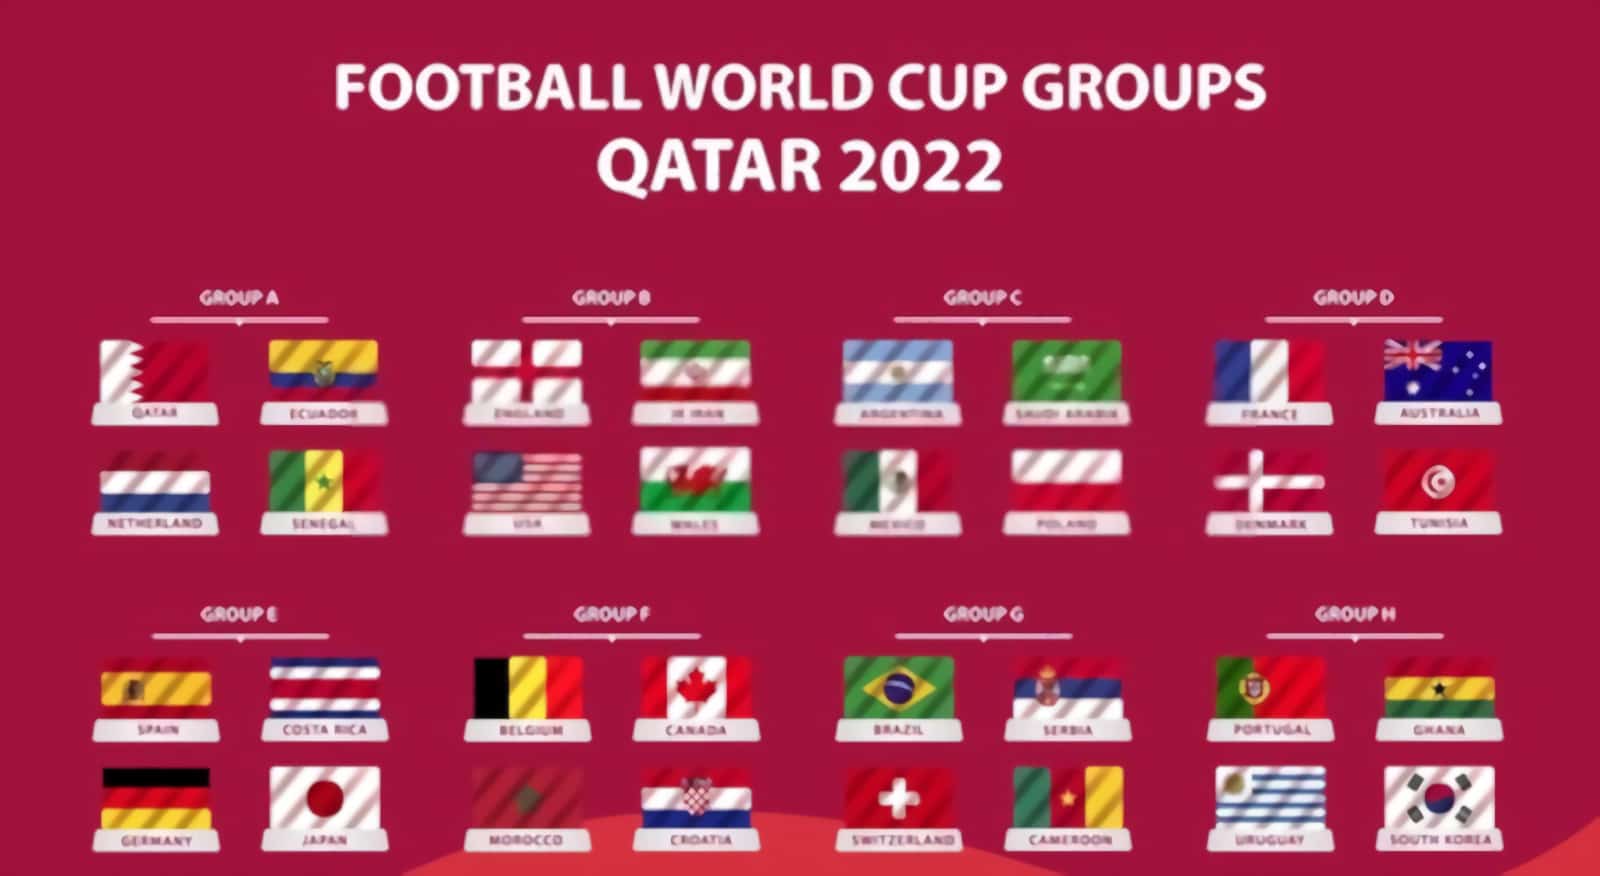 Qatar 2022 FIFA World Cup fixtures